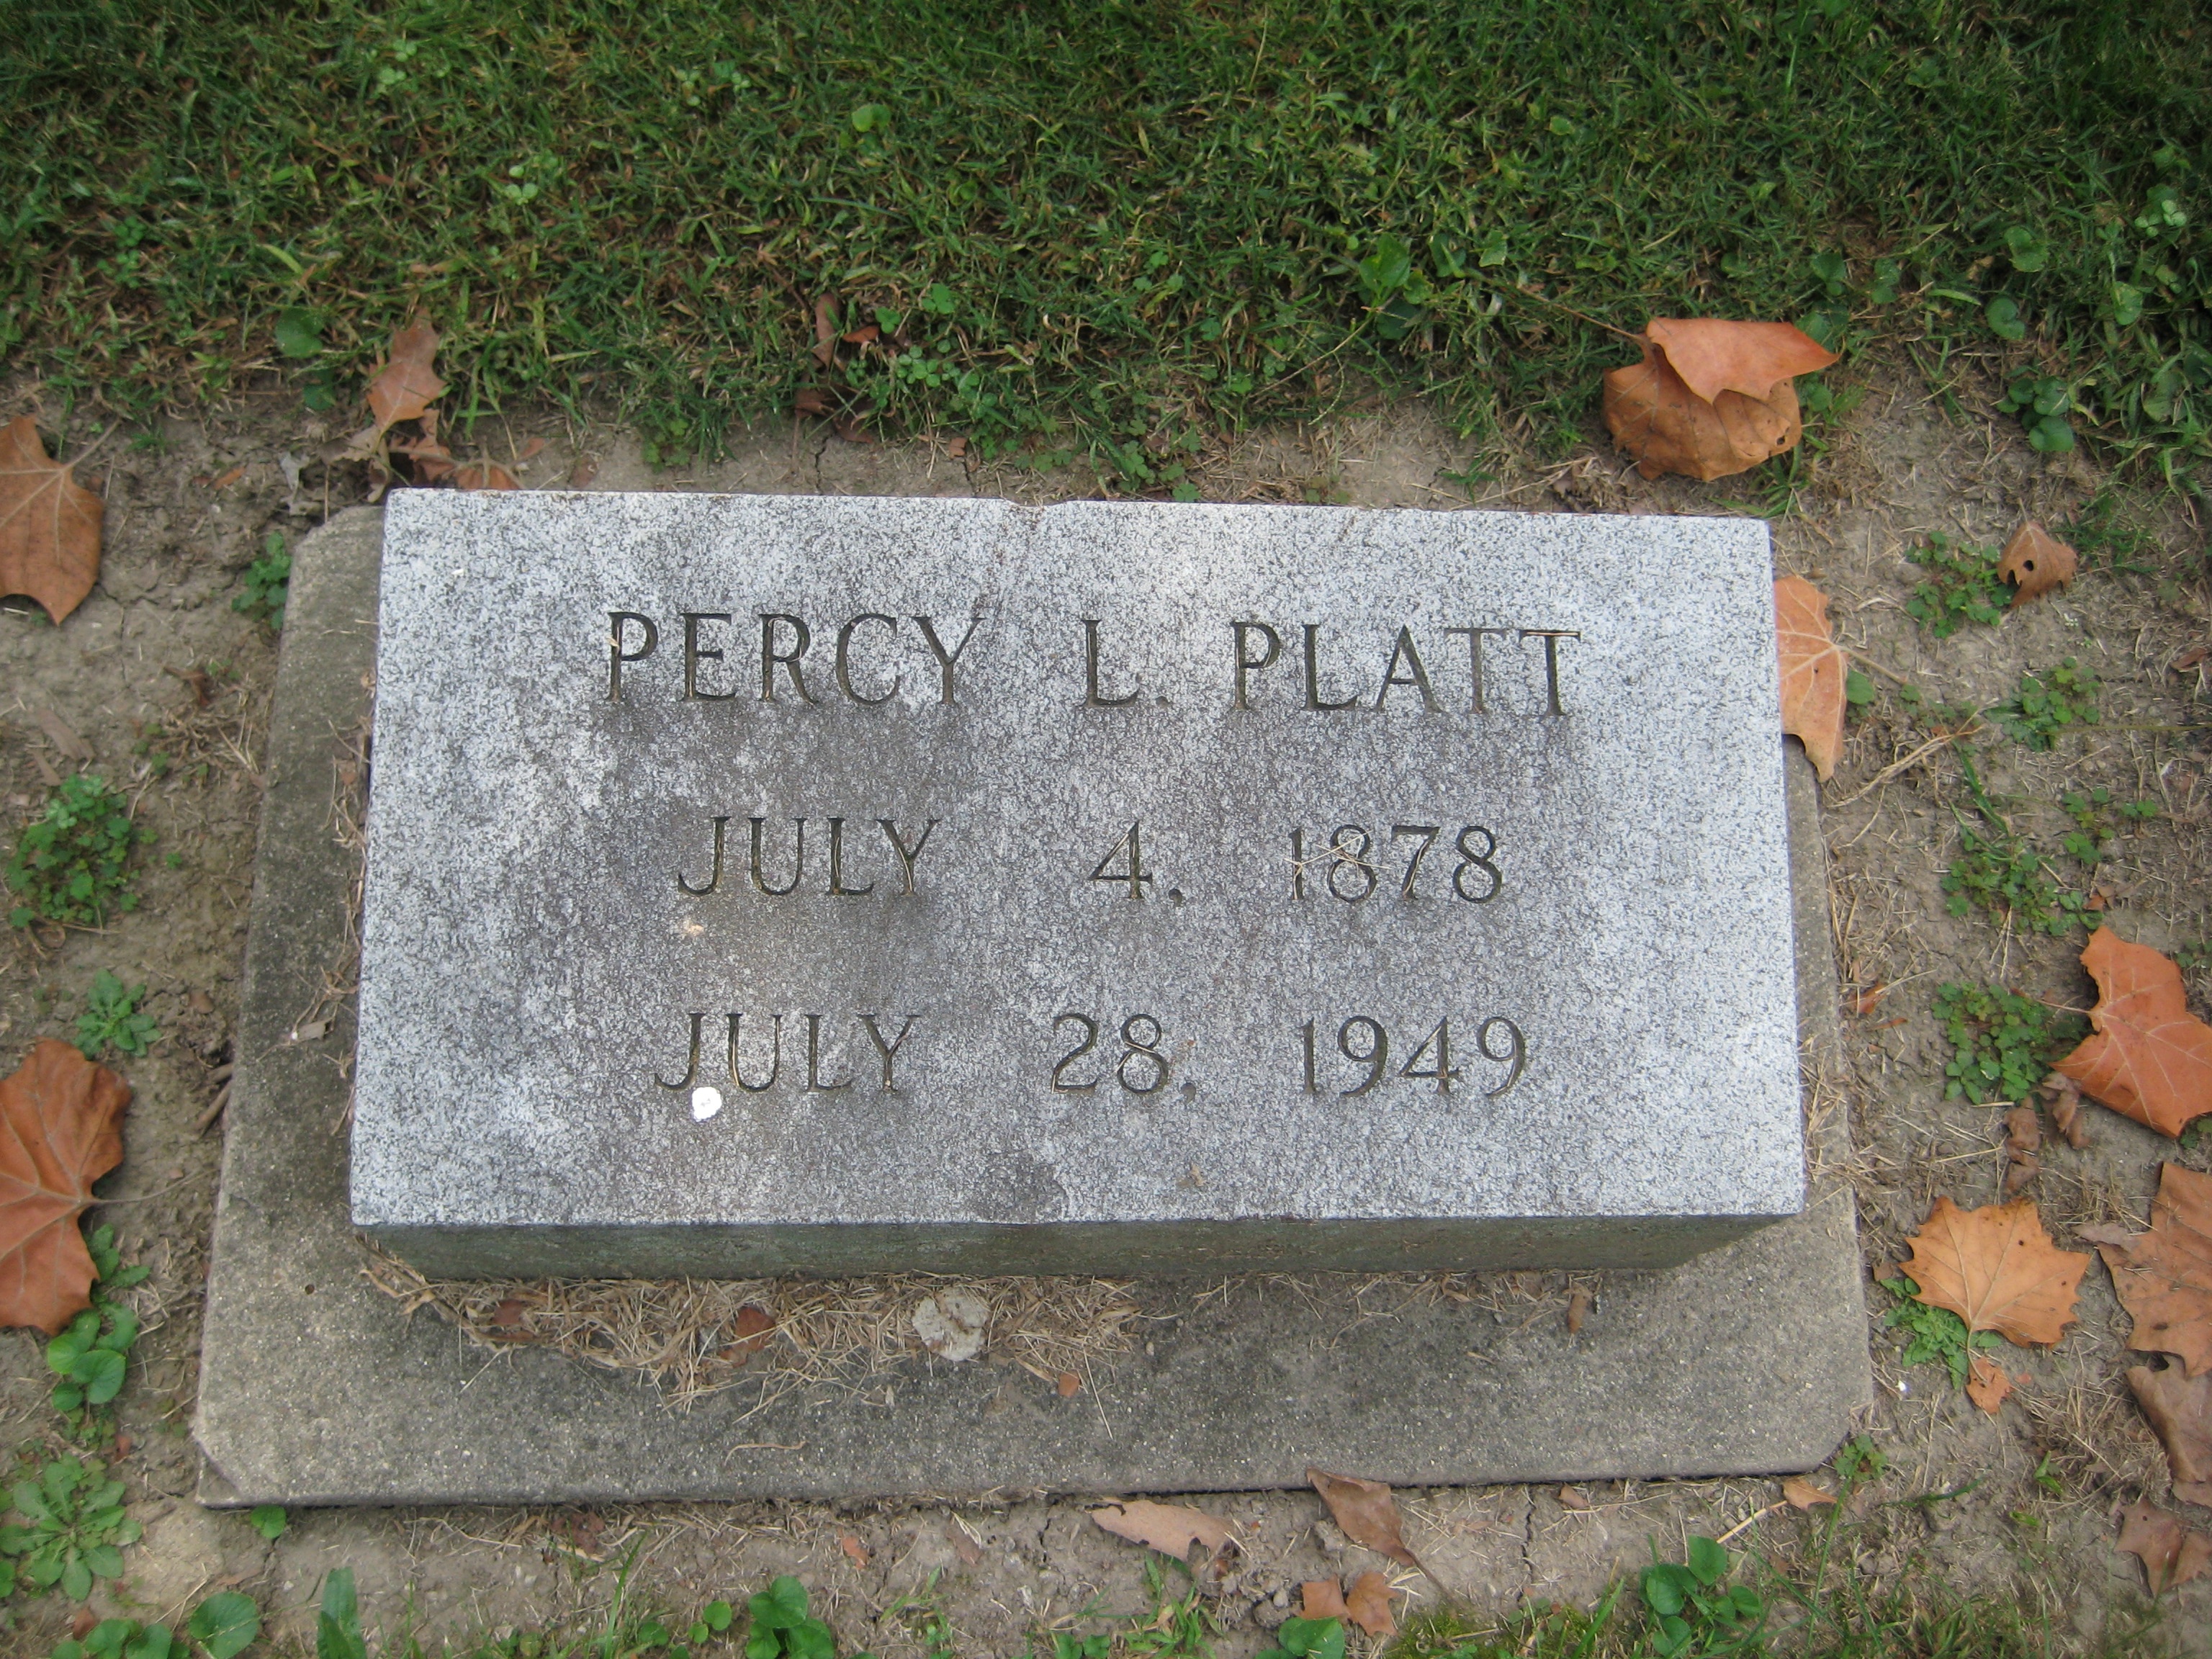 Platt, Percy